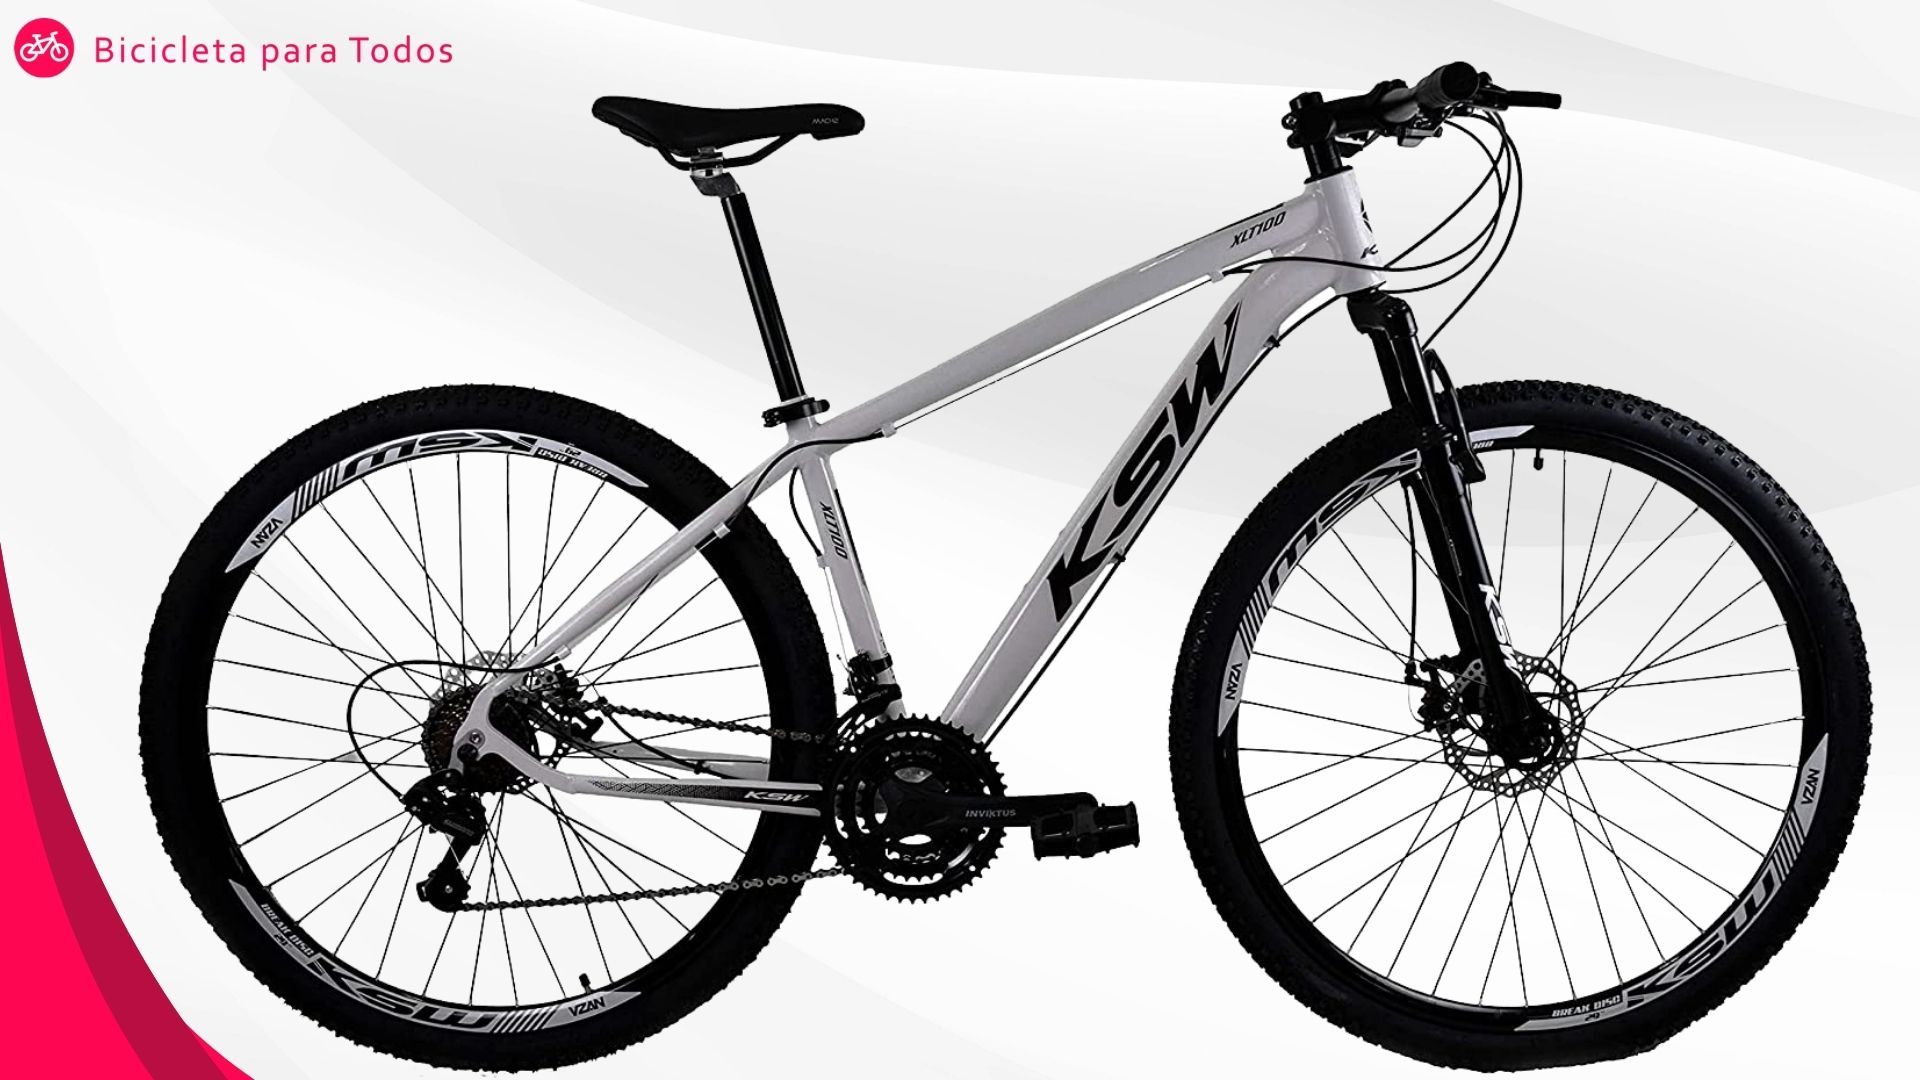 bike KSW modelo XLT com fundo cinza e logo do Bicicleta Para Todos